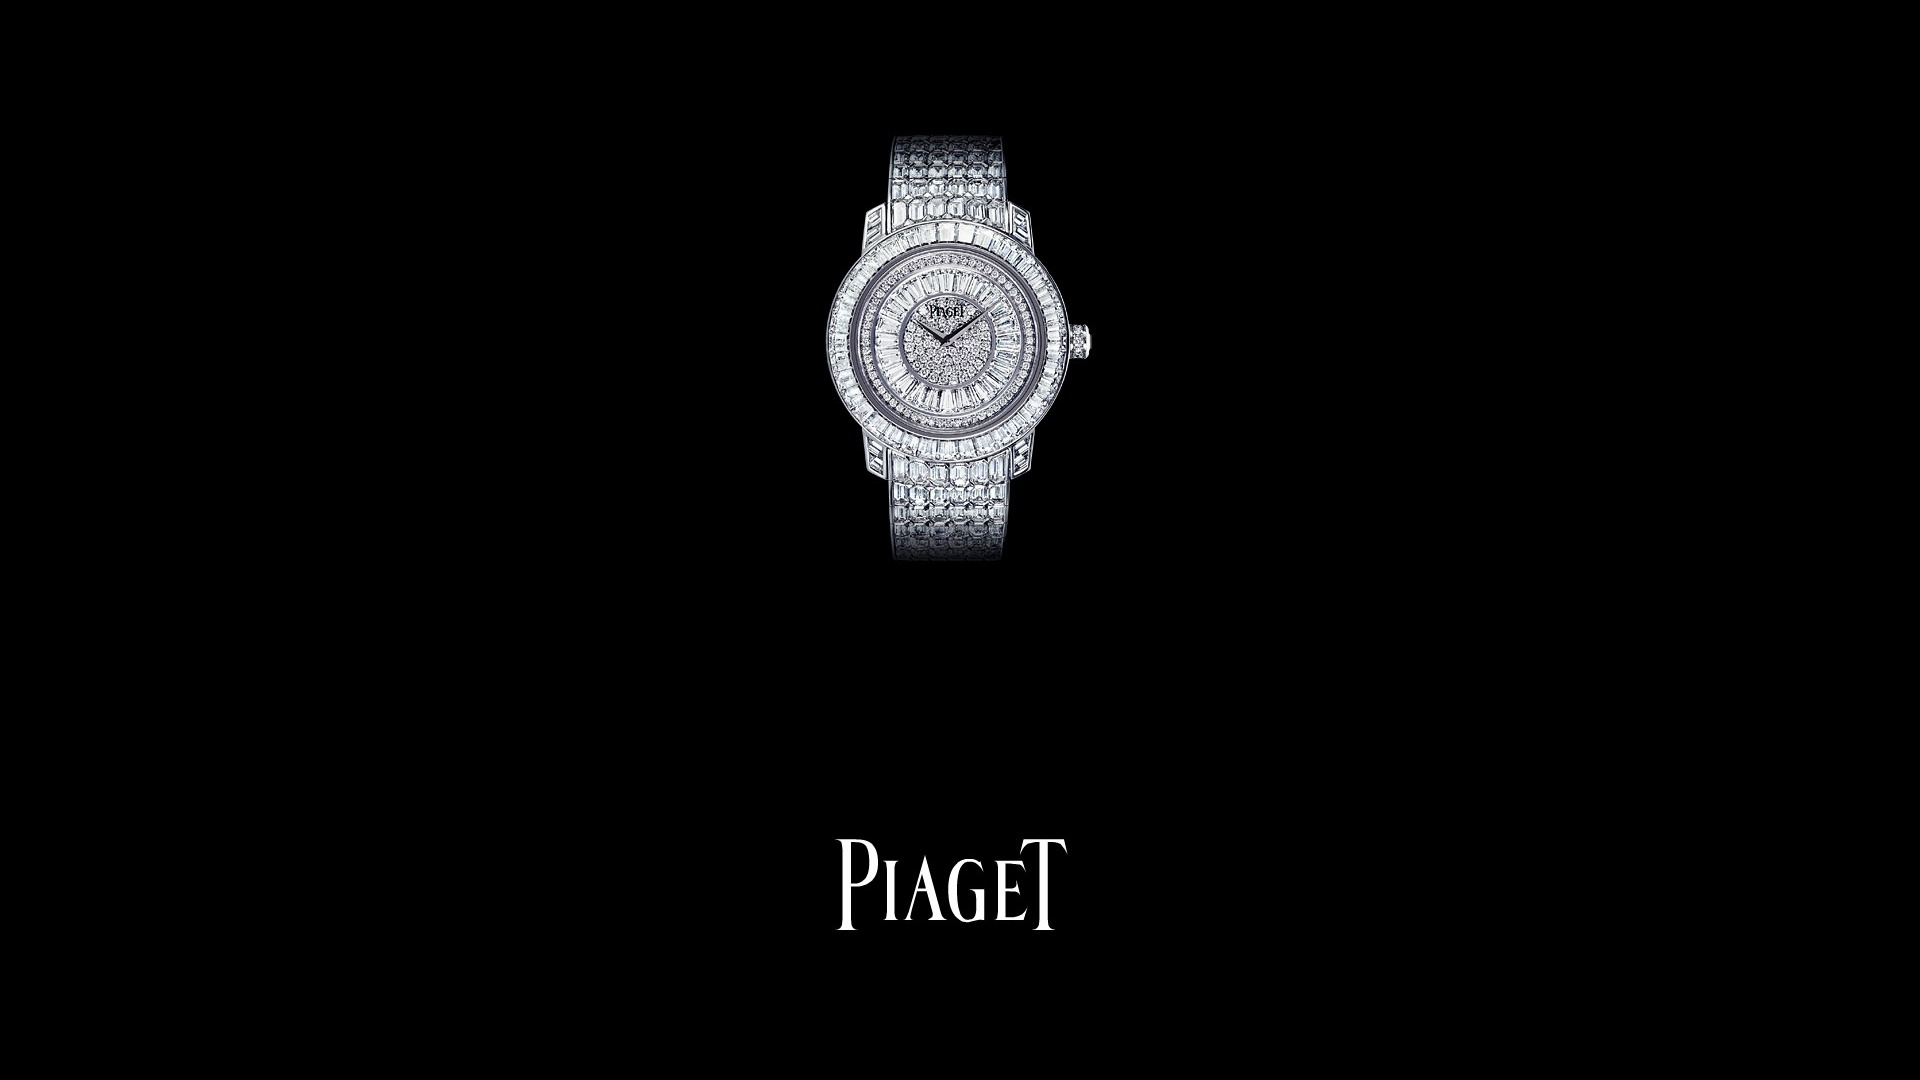 Piaget Diamante fondos de escritorio de reloj (2) #14 - 1920x1080